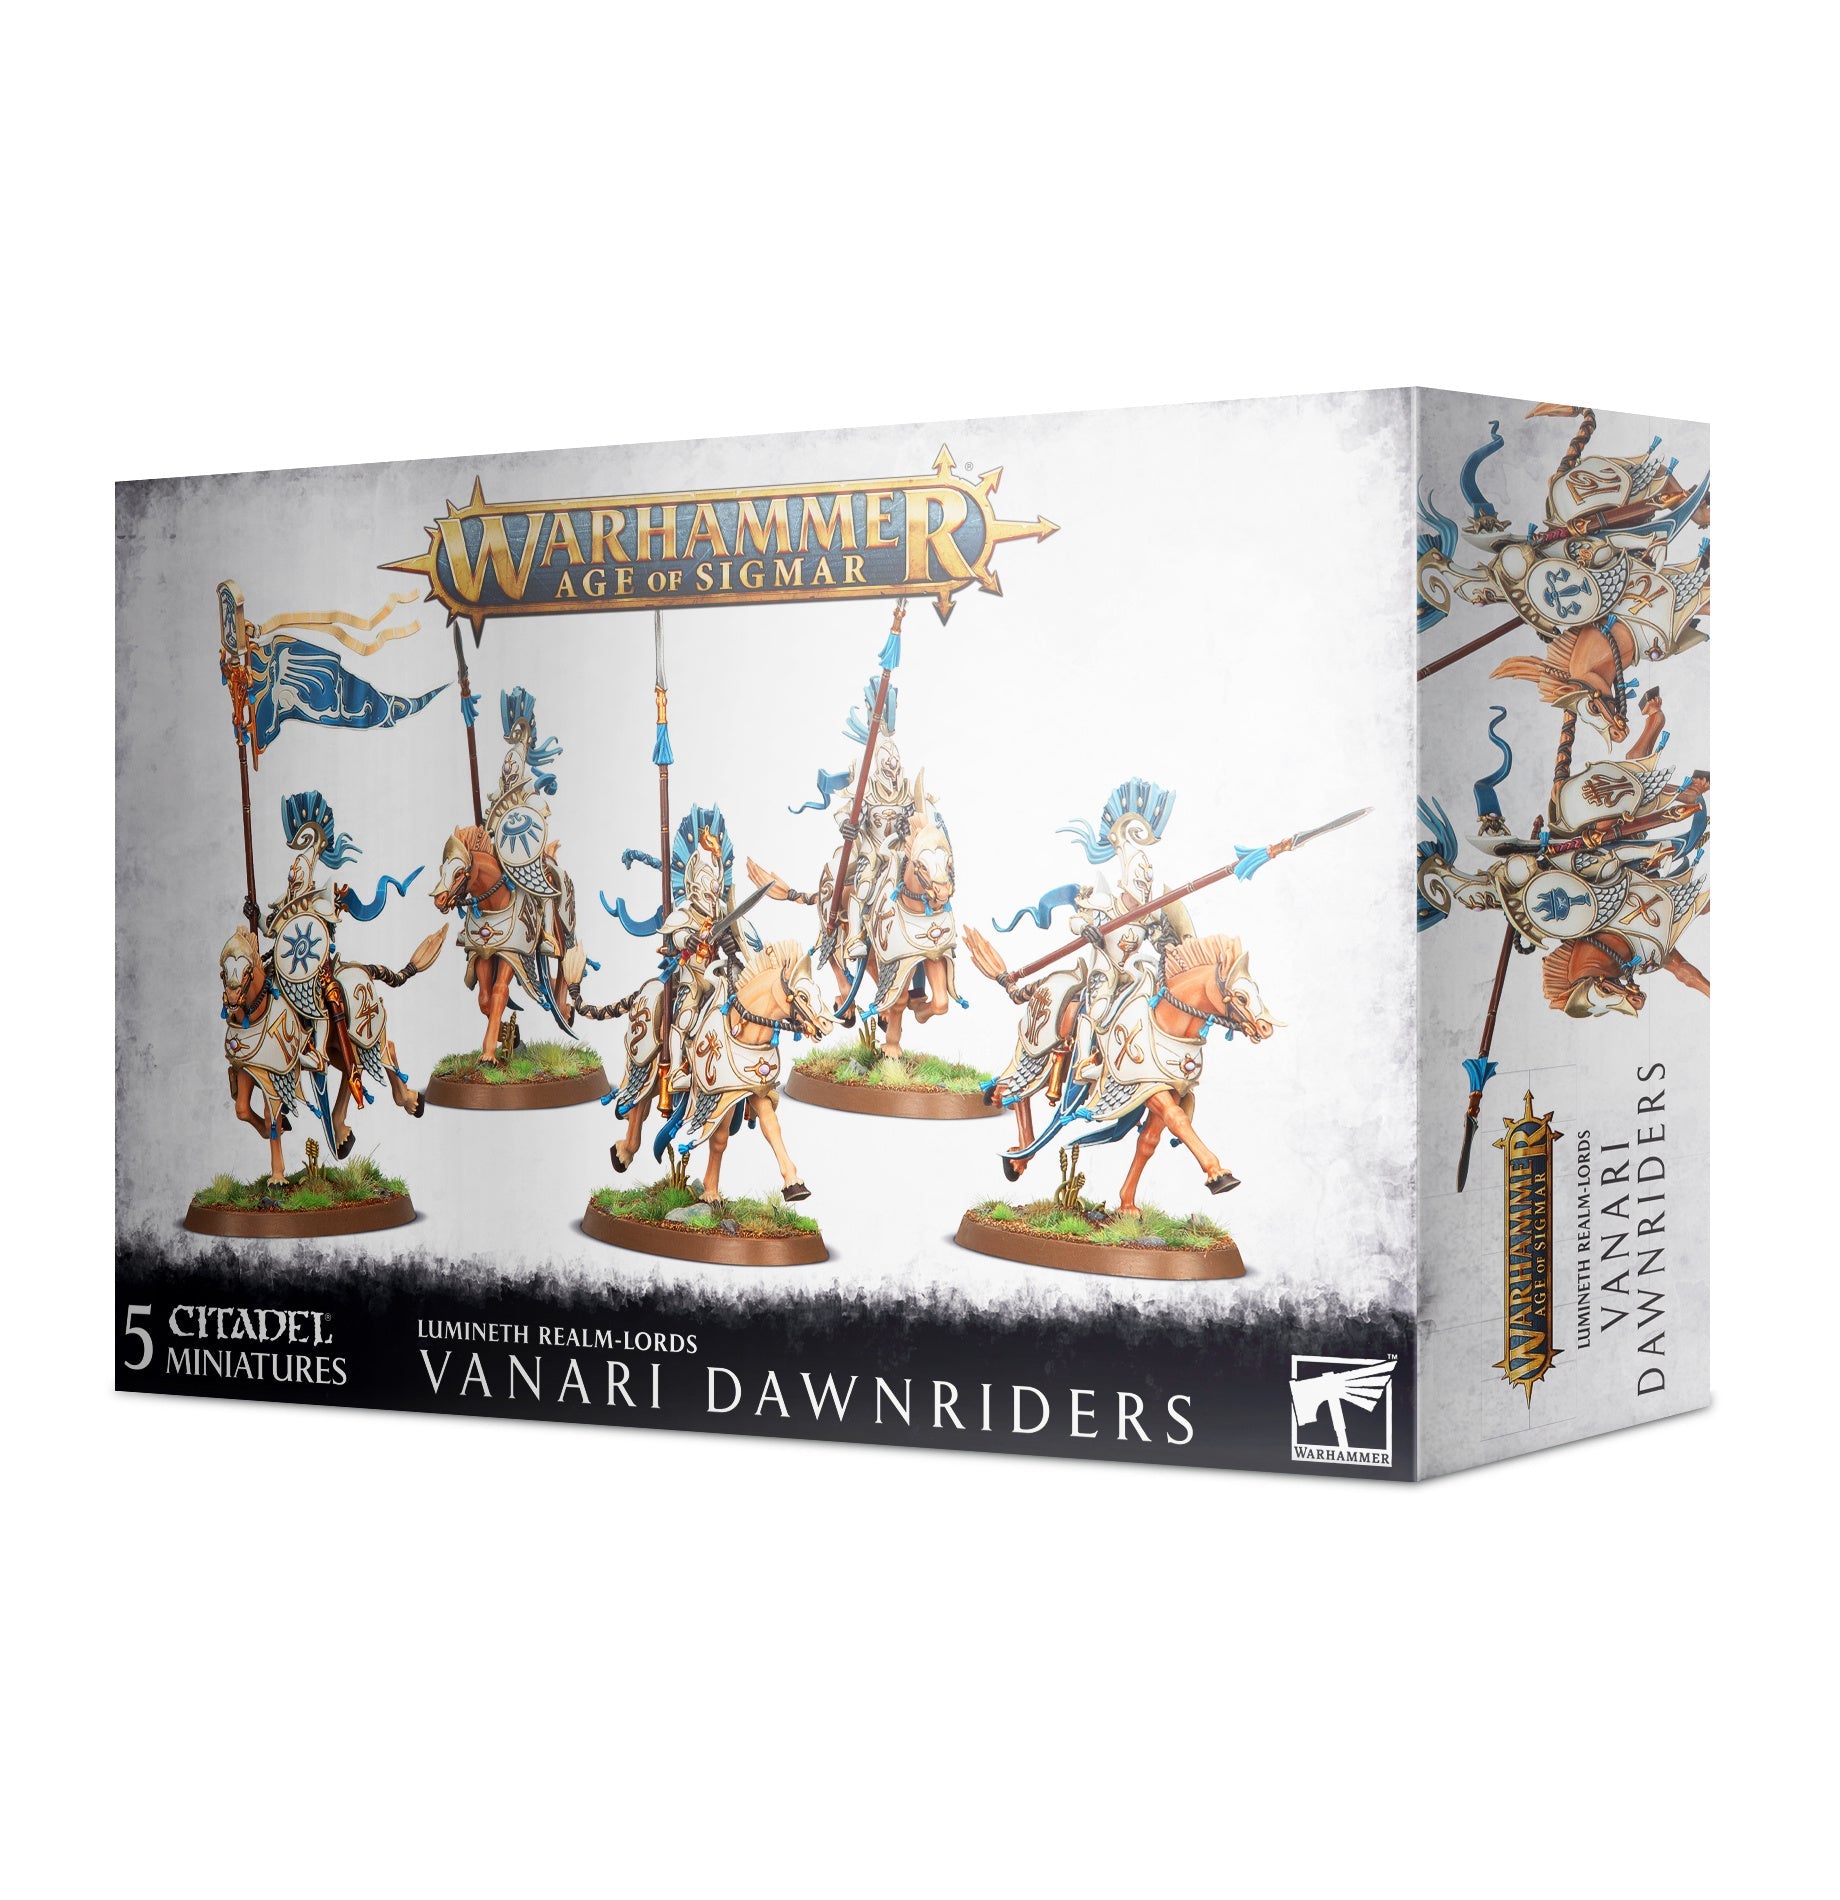 Lumineth Realm-Lords Vanari Dawnriders (web) | GrognardGamesBatavia